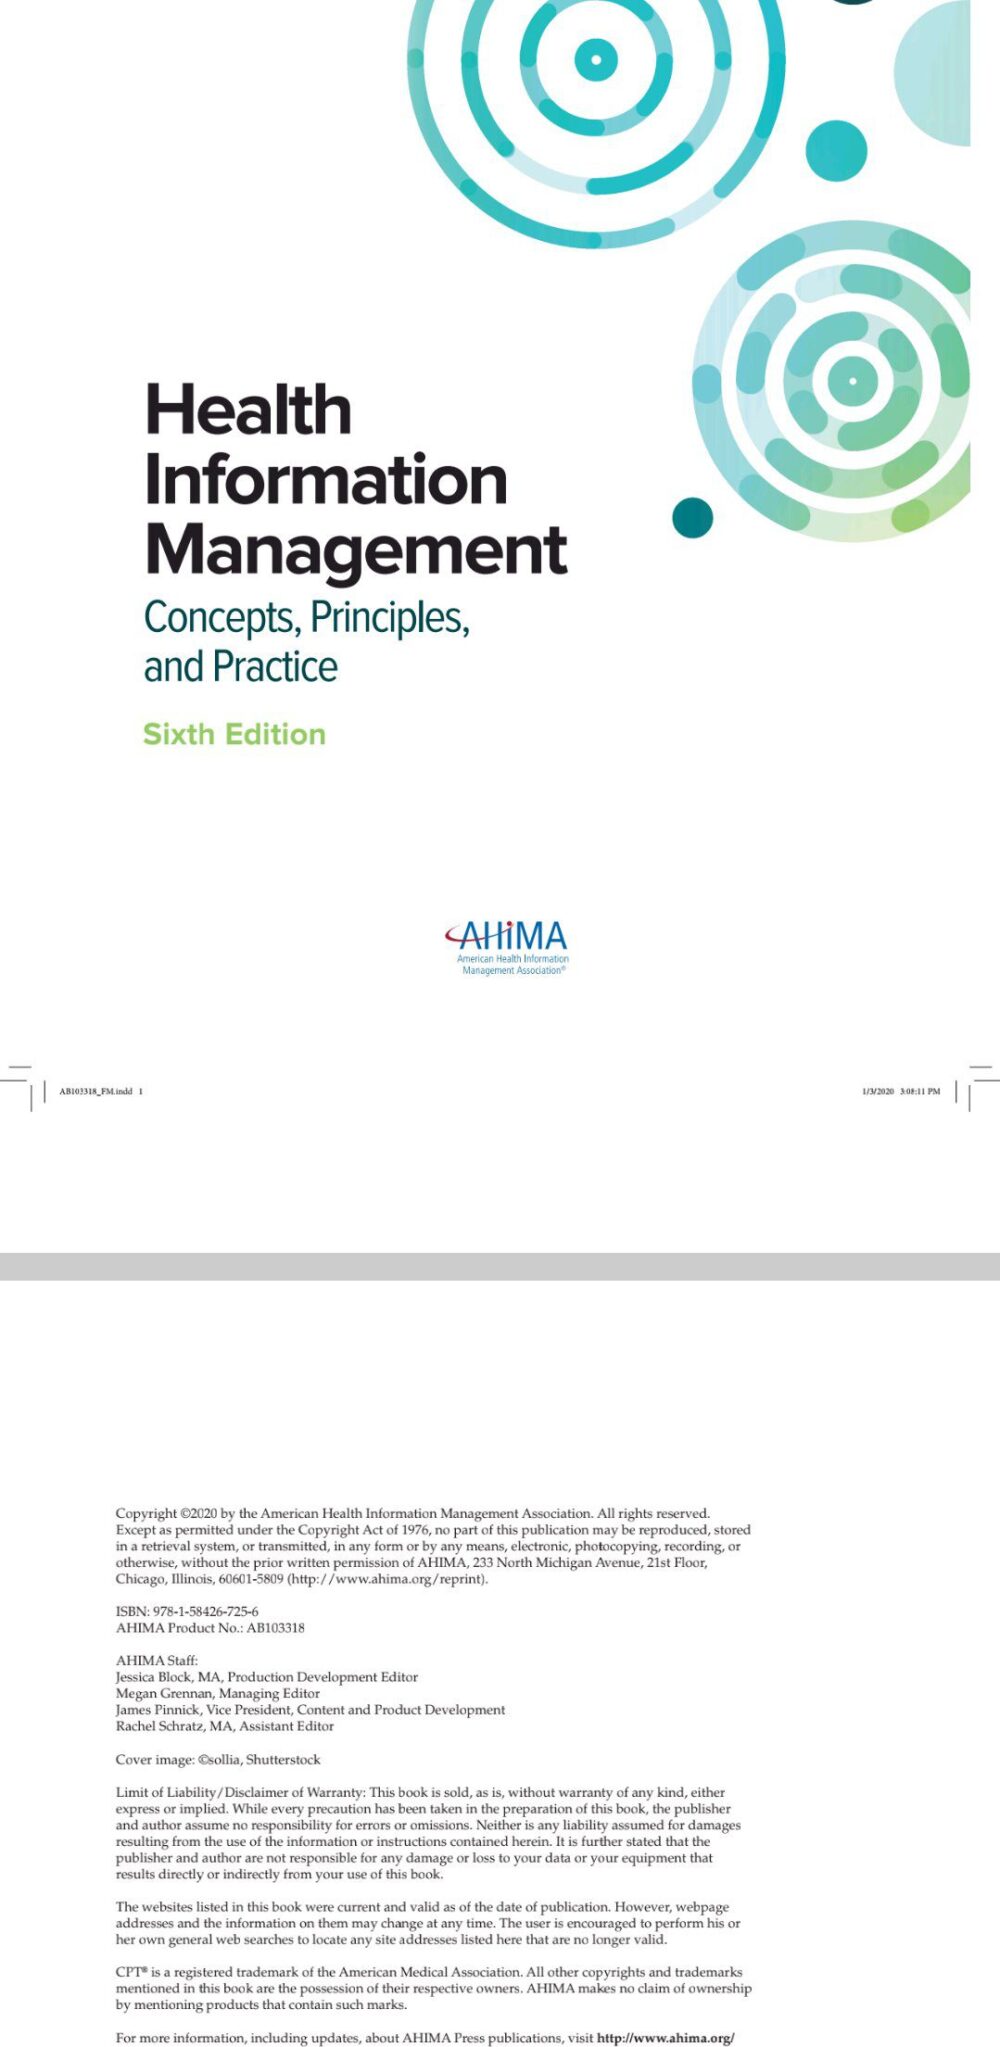 Gesundheitsinformationsmanagement: Konzepte, Prinzipien und Praxis, 6. Auflage